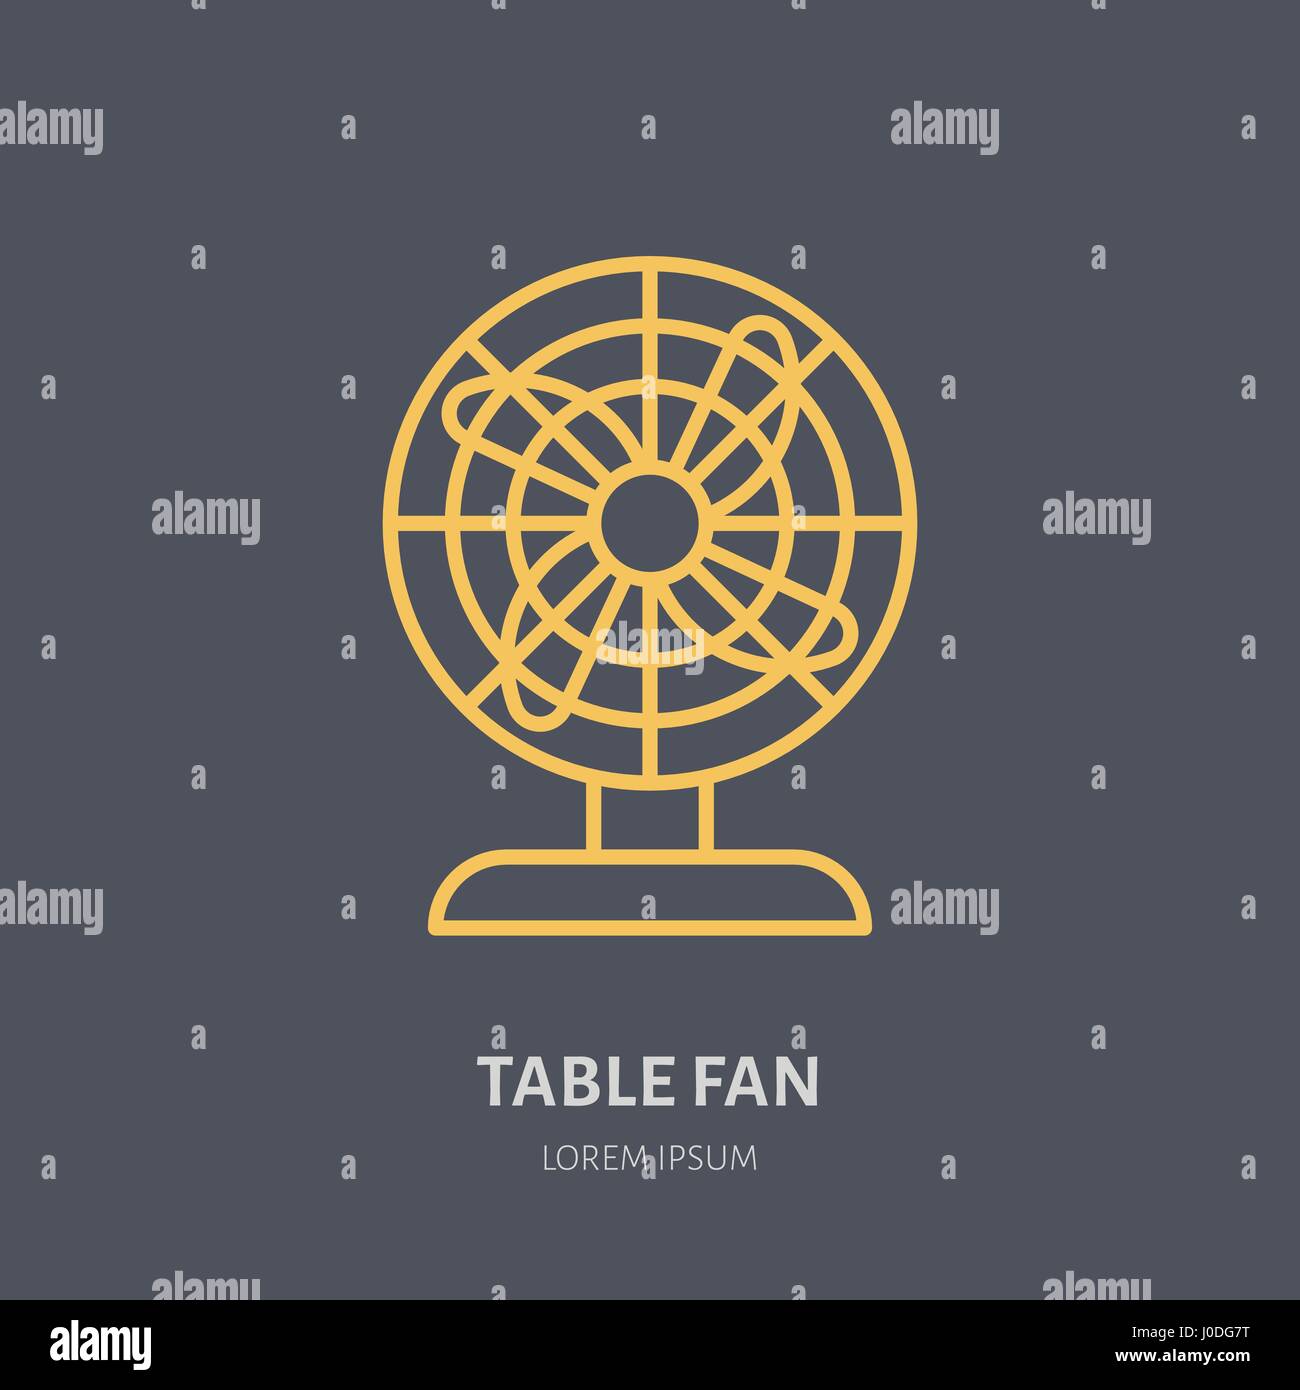 Domestico linea alimentazione logo. Segno piatto di fan table. Logotipo per elettrodomestici store, negozio di ventilazione. Illustrazione Vettoriale